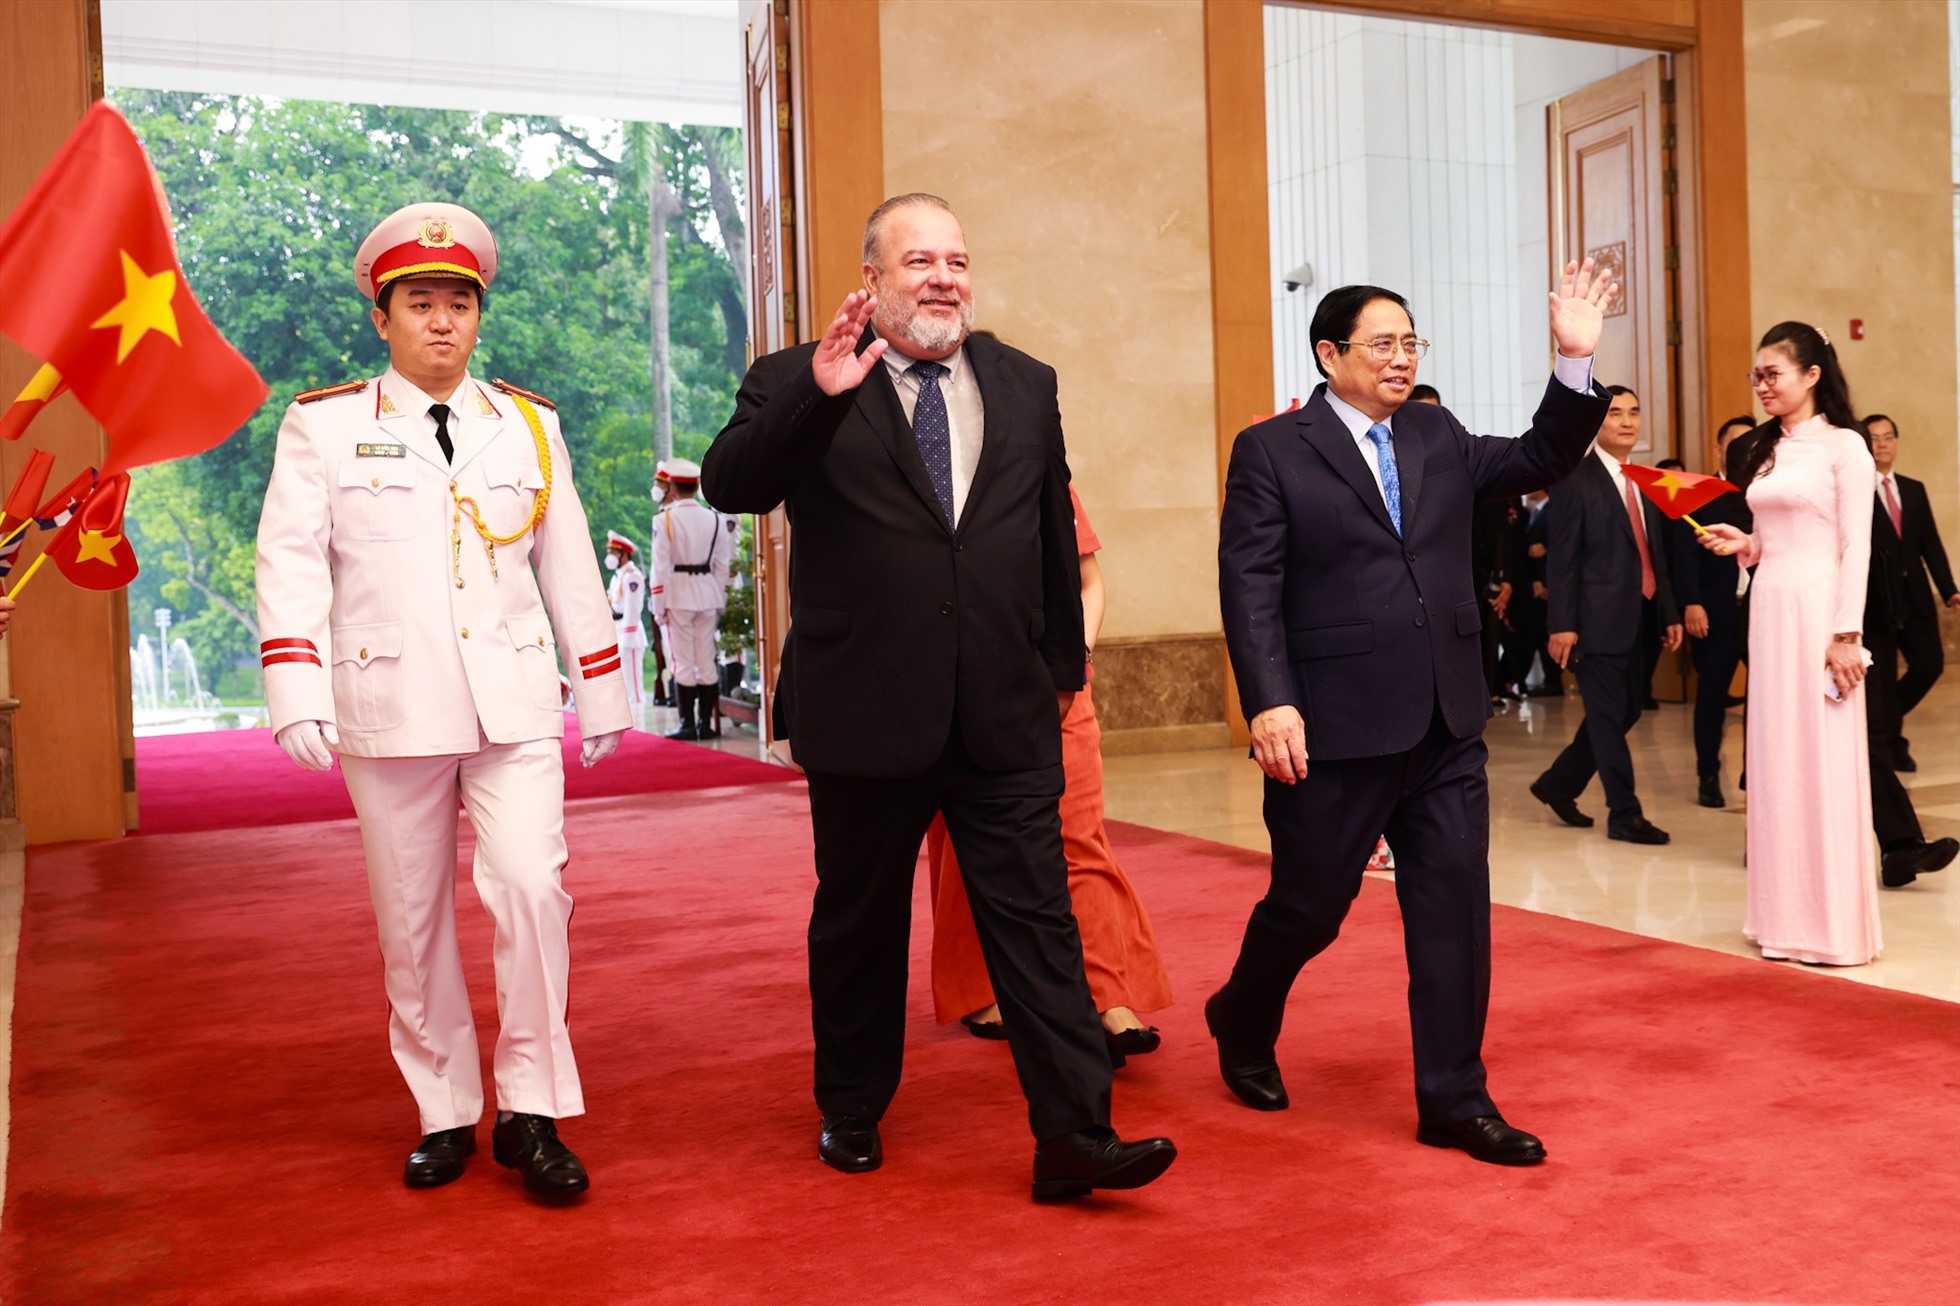 Chuyến thăm nhằm triển khai các nội dung thỏa thuận đạt được giữa lãnh đạo cấp cao hai nước, tiếp nối và phát triển quan hệ đặc biệt Việt Nam-Cuba. Ảnh: Hải Nguyễn